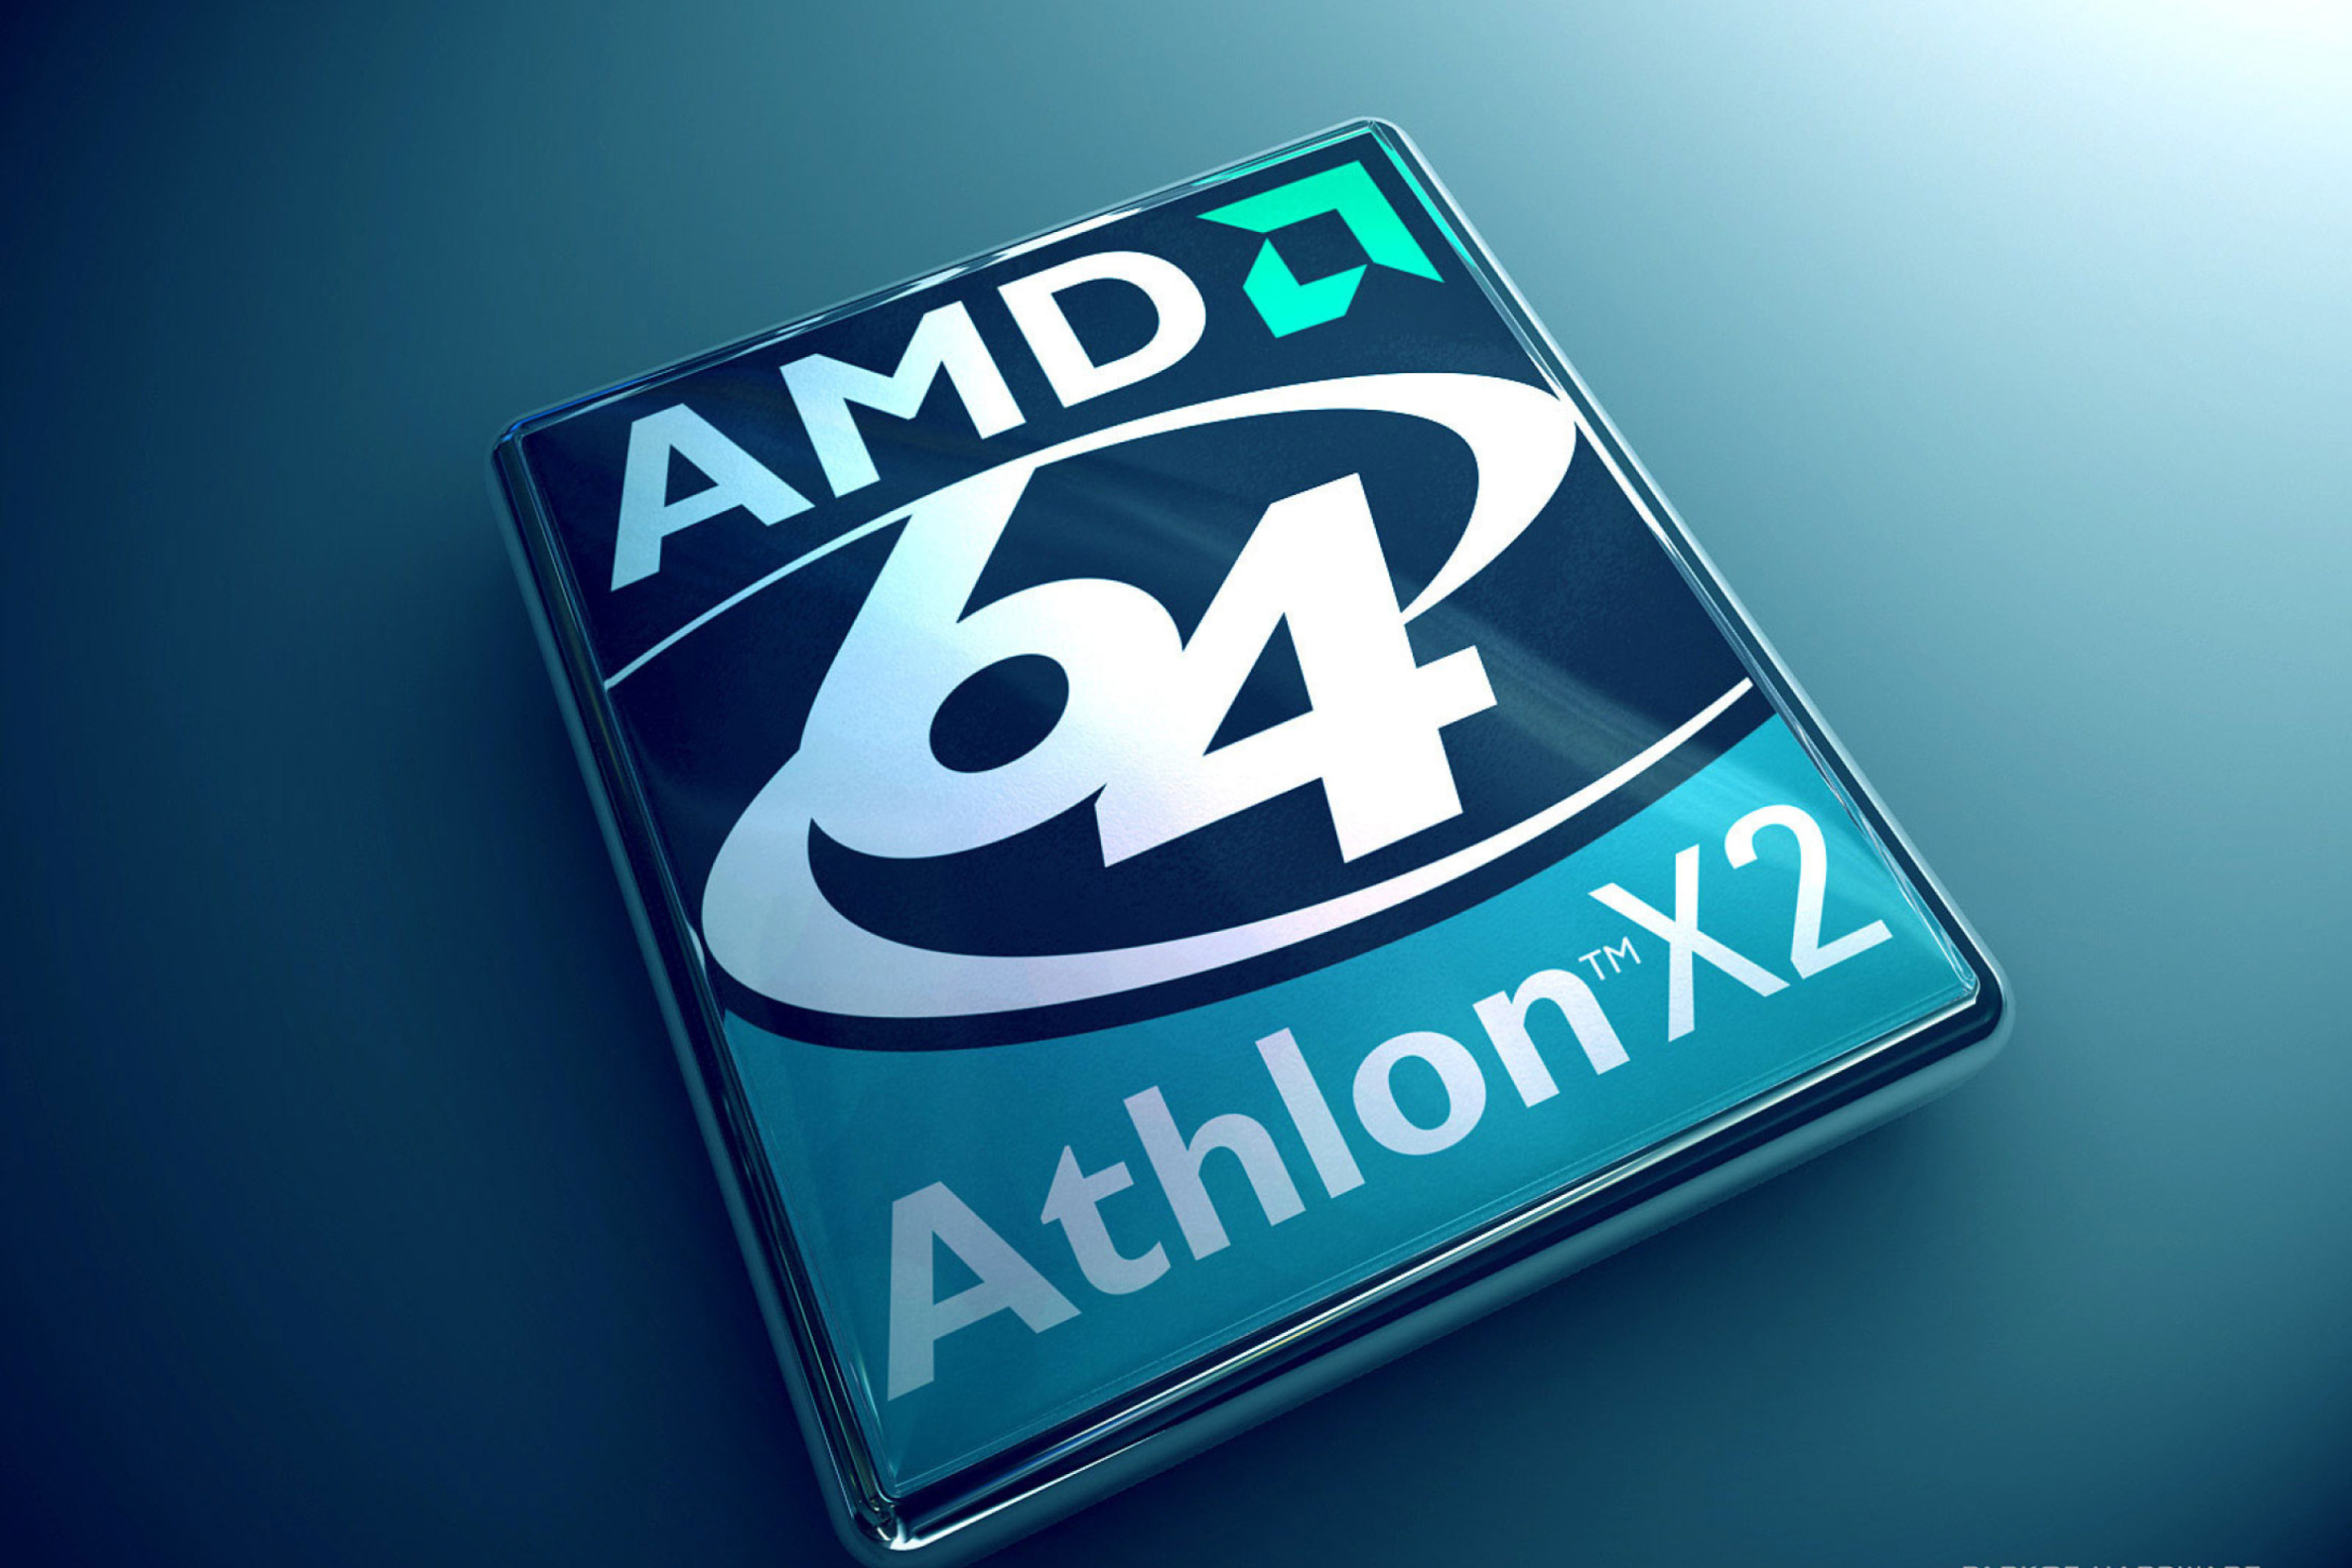 Sfondi AMD Athlon 64 X2 2880x1920